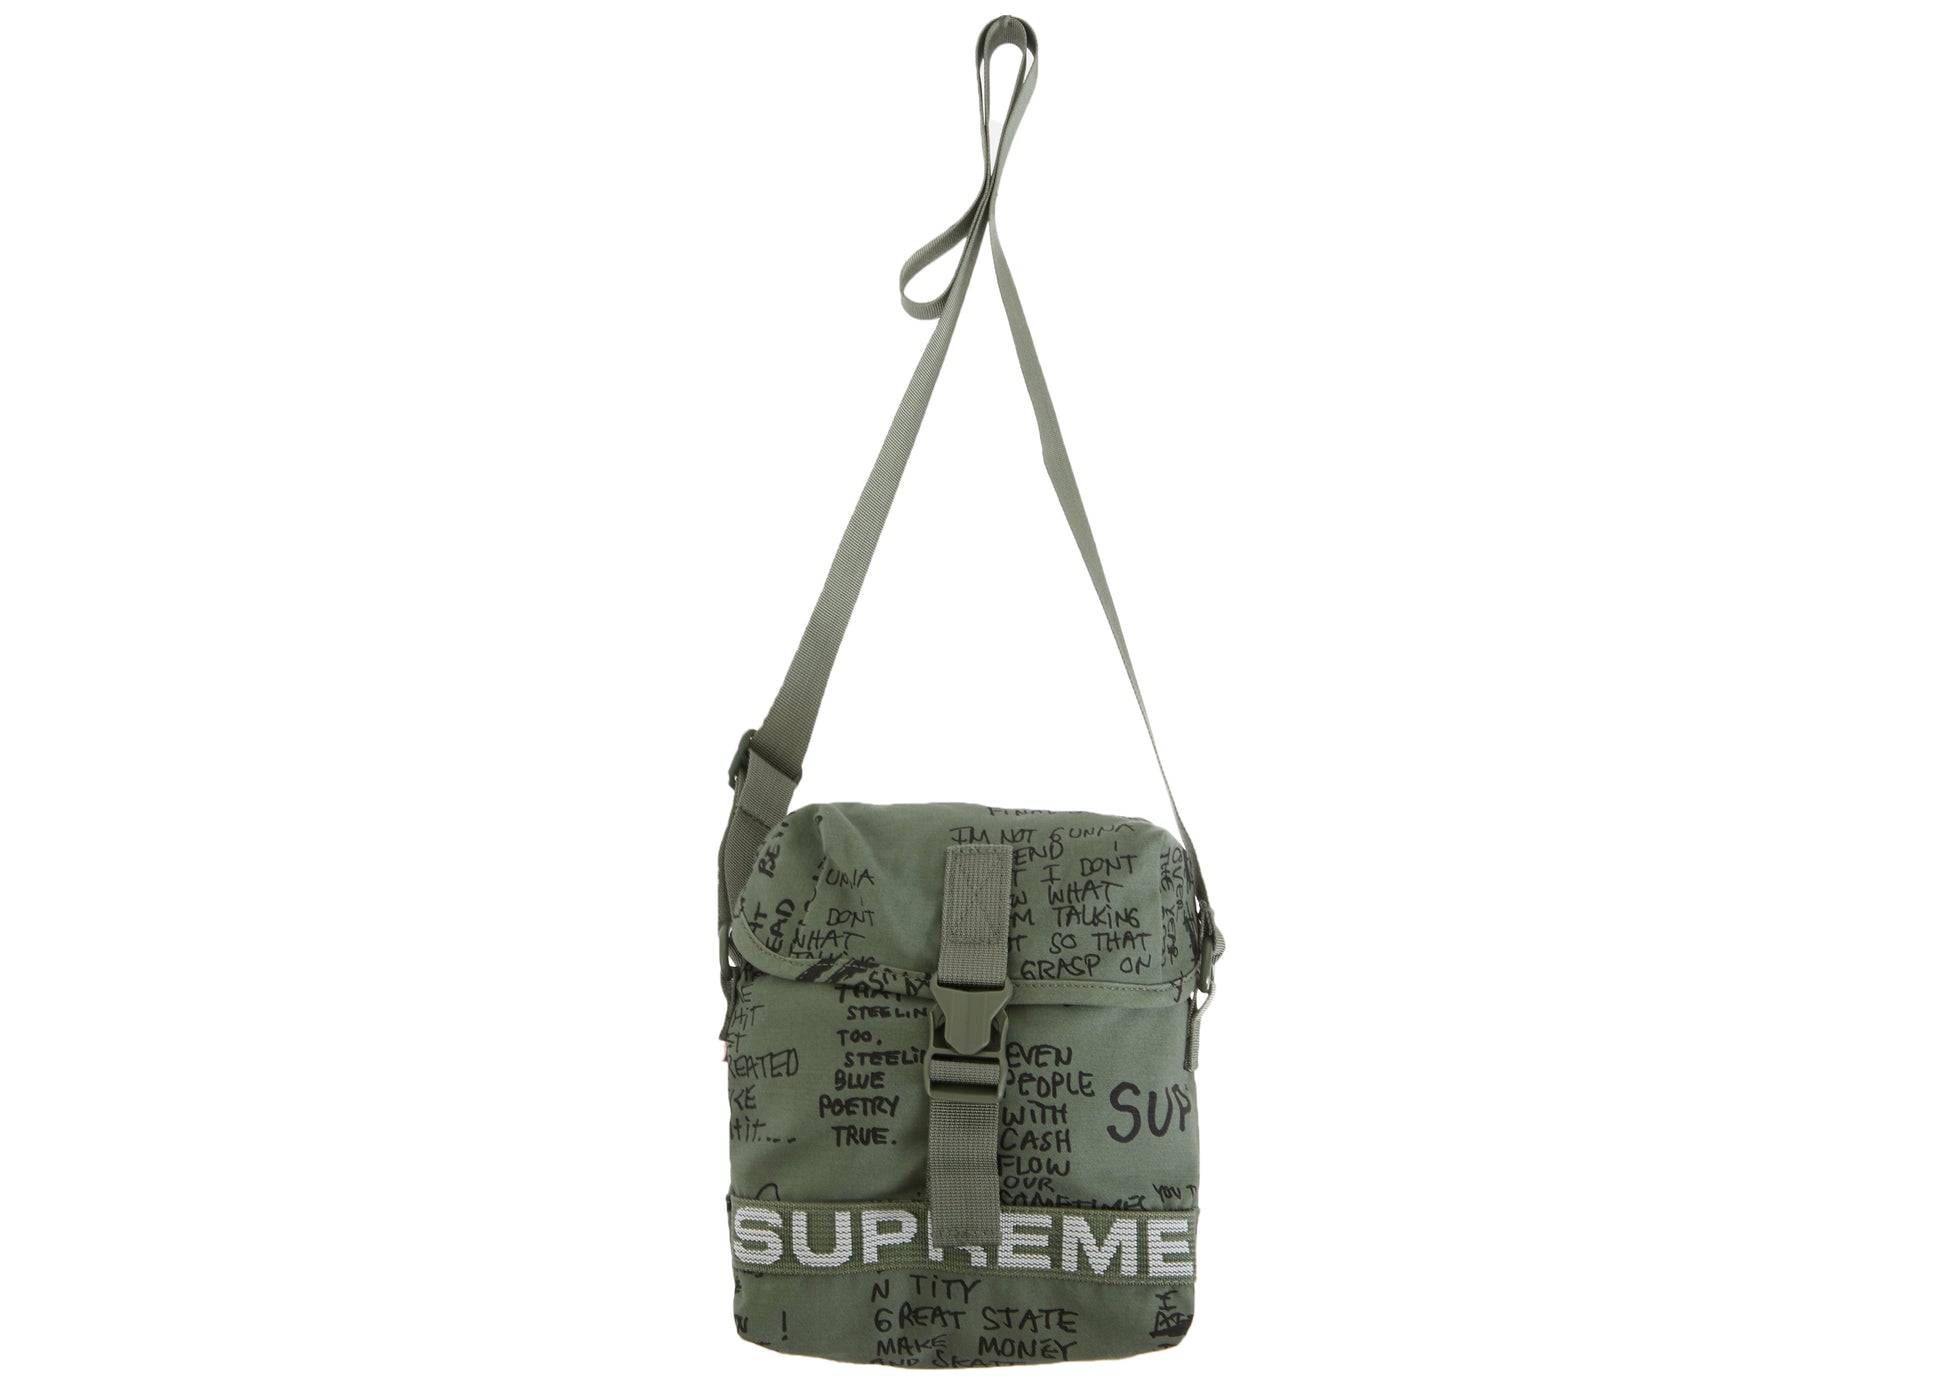 Supreme Shoulder Bag (FW22) Olive